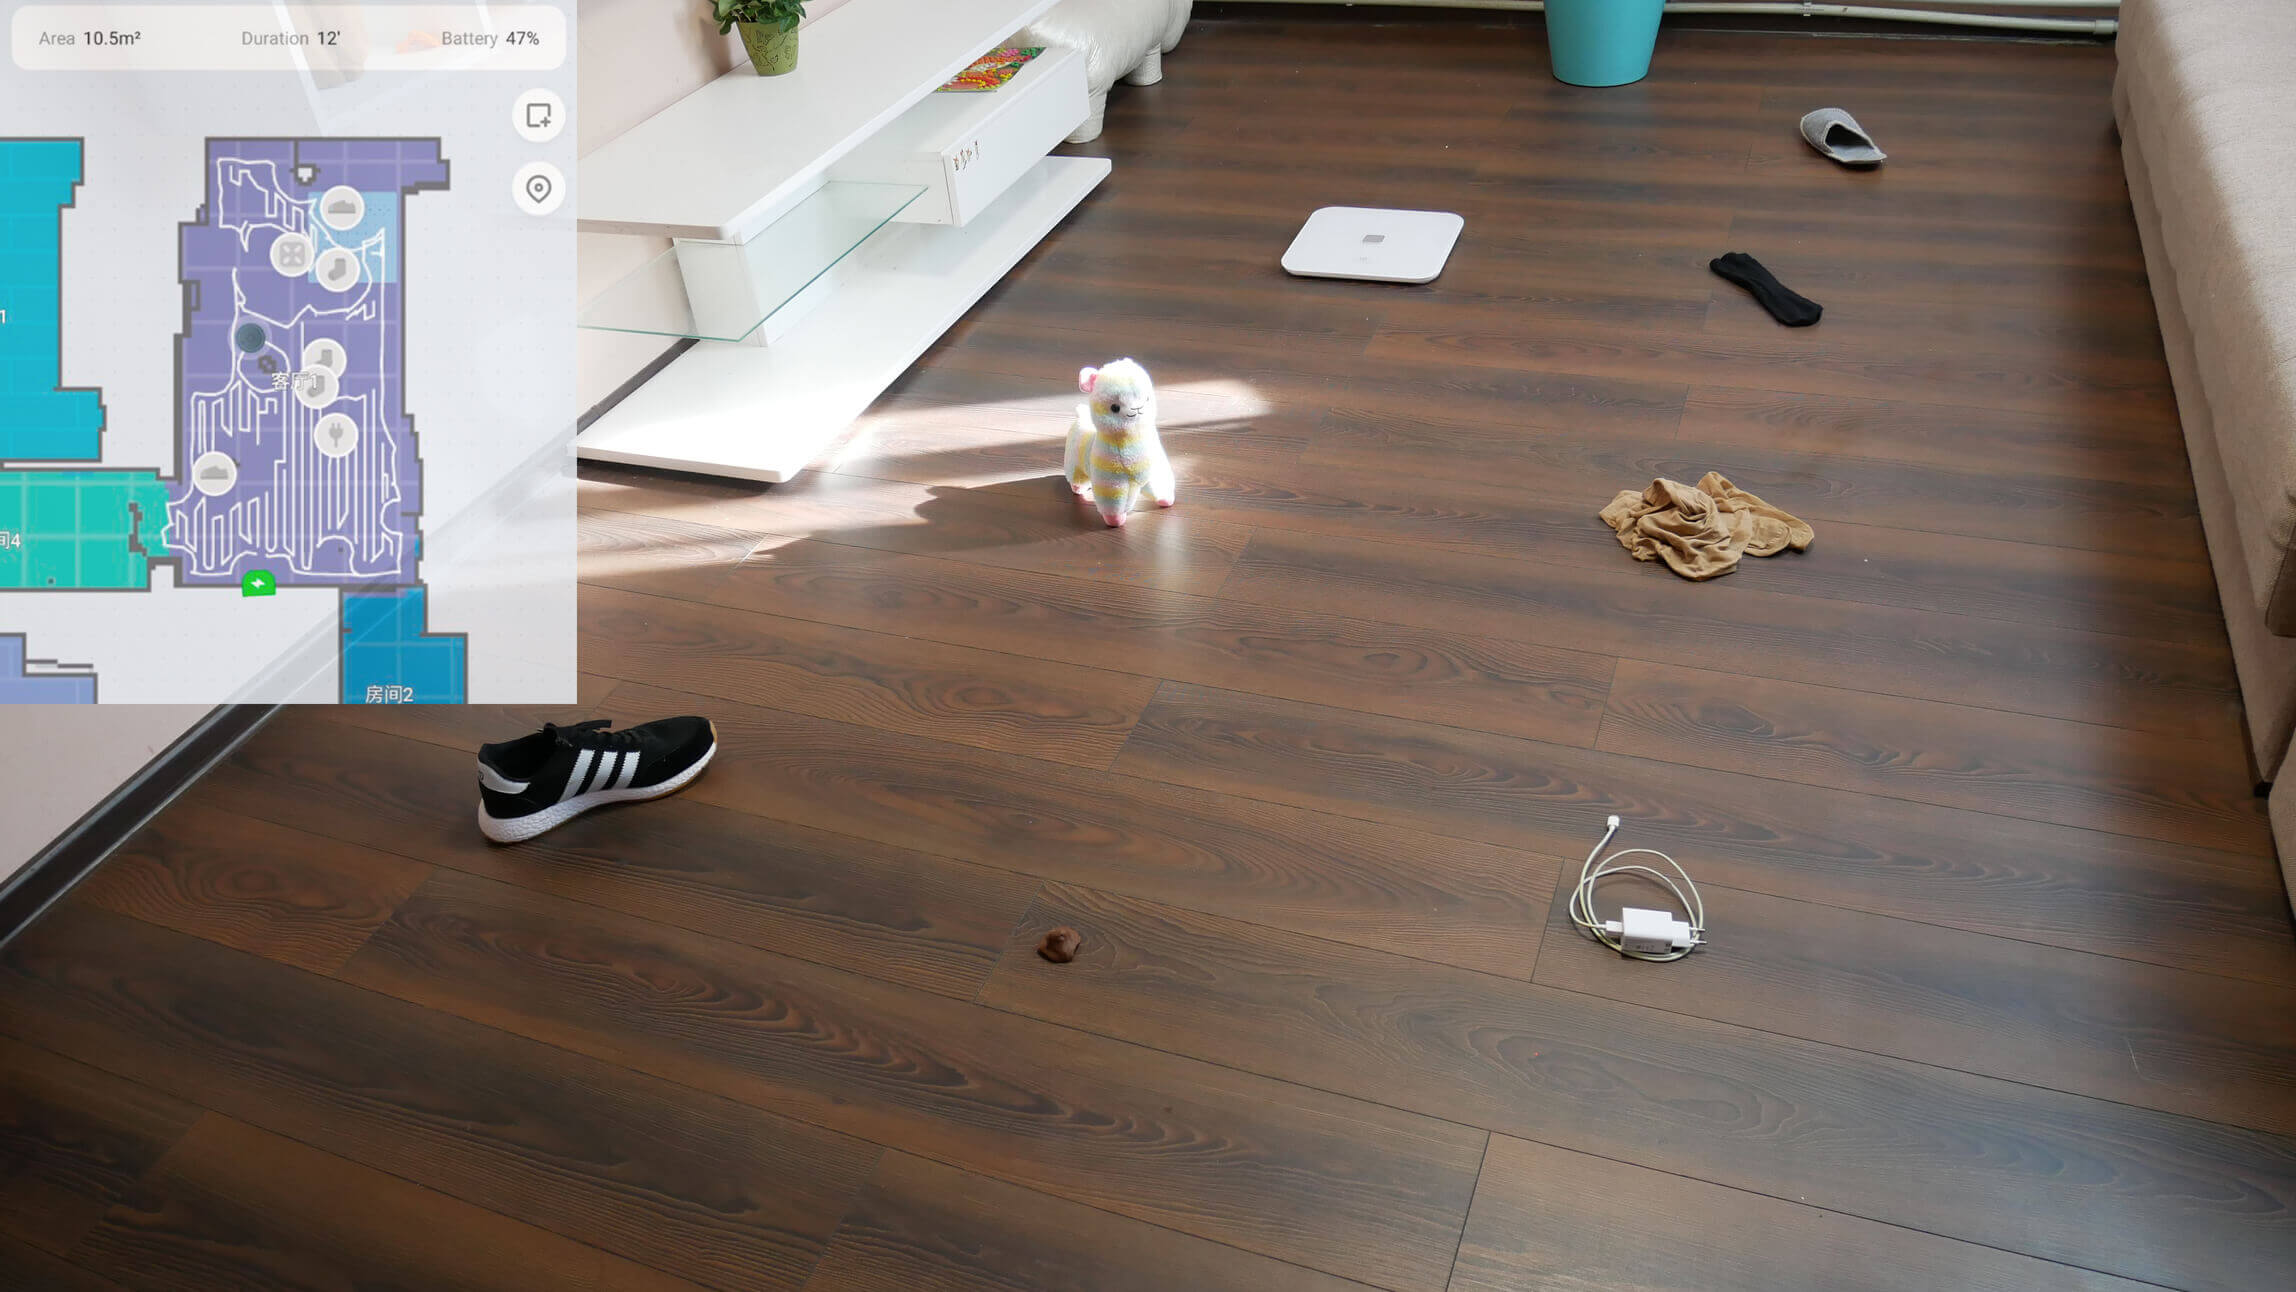 распознавание предметов на полу Xiaomi Mijia Vacuum Cleaner Pro